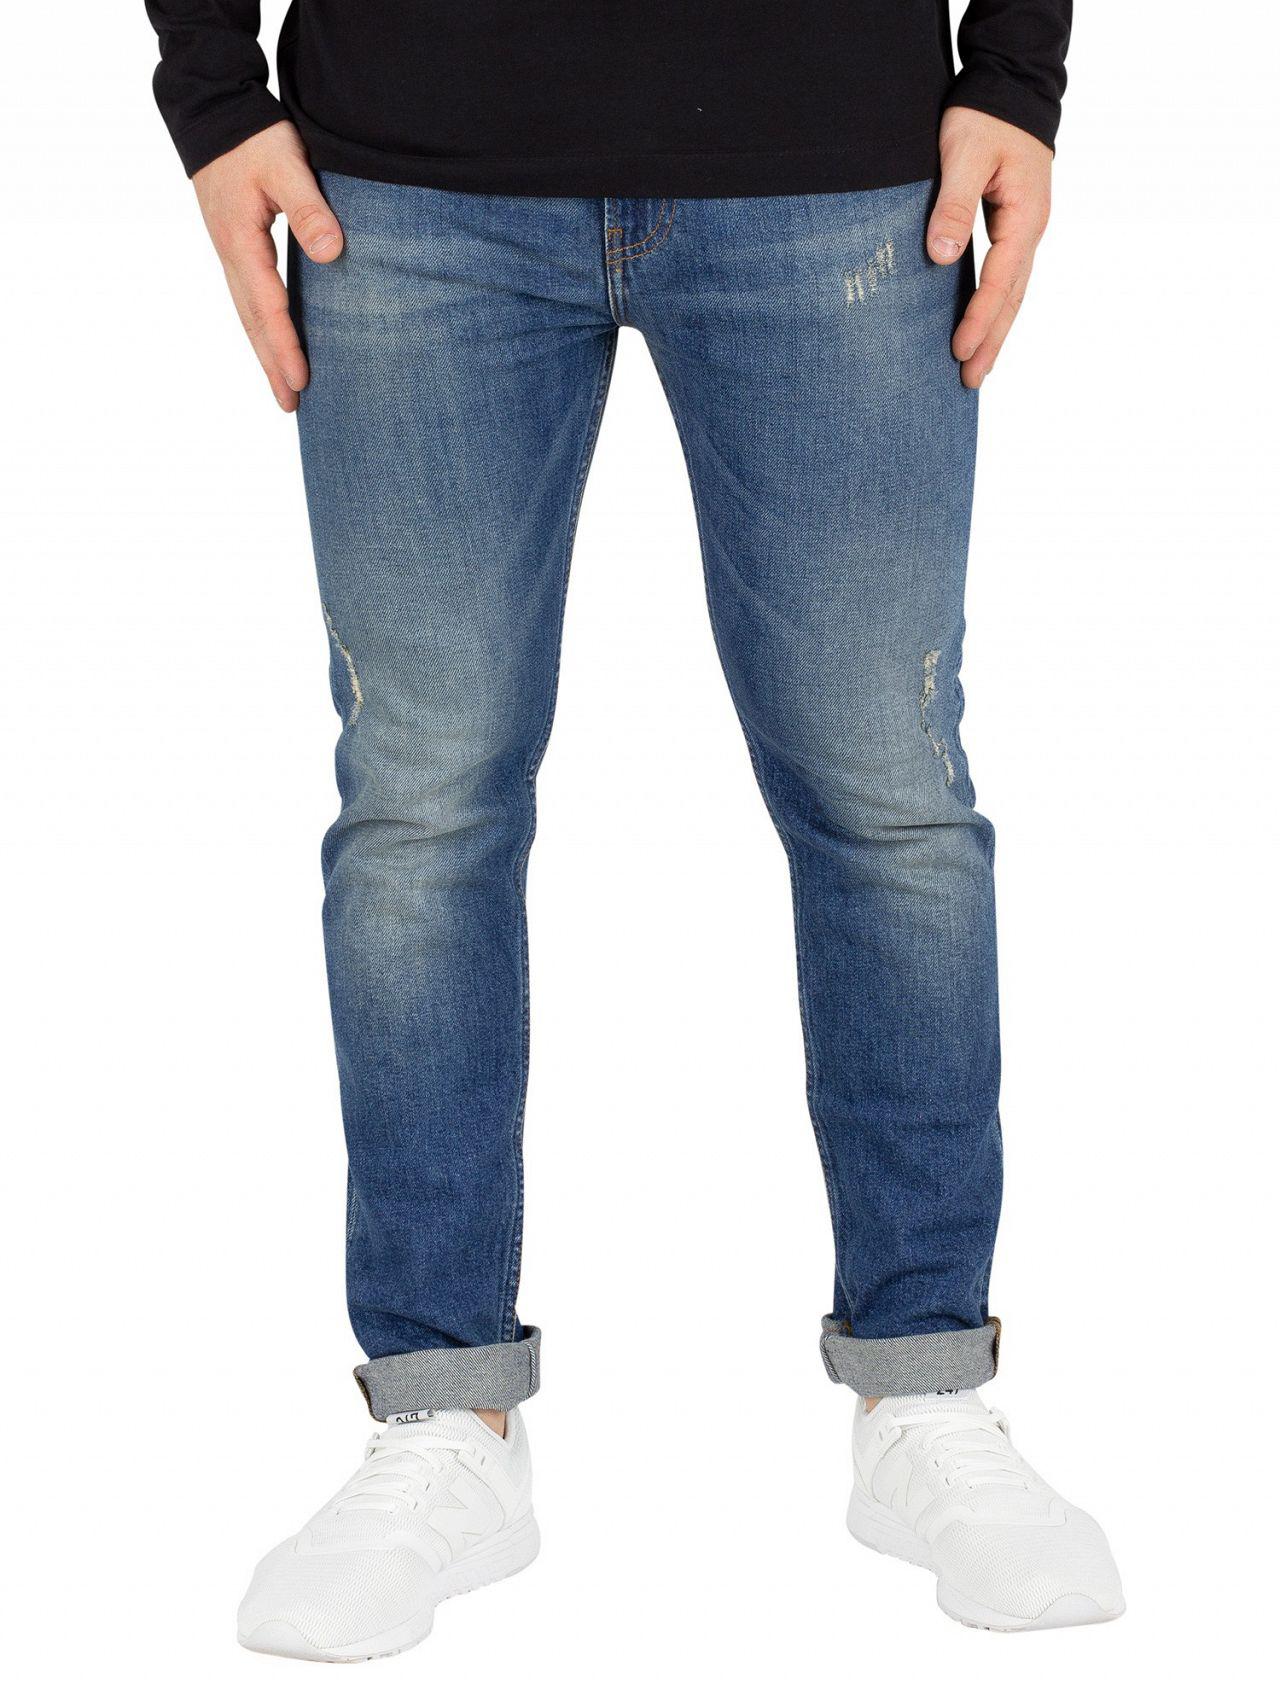 calvin klein modern classic jeans